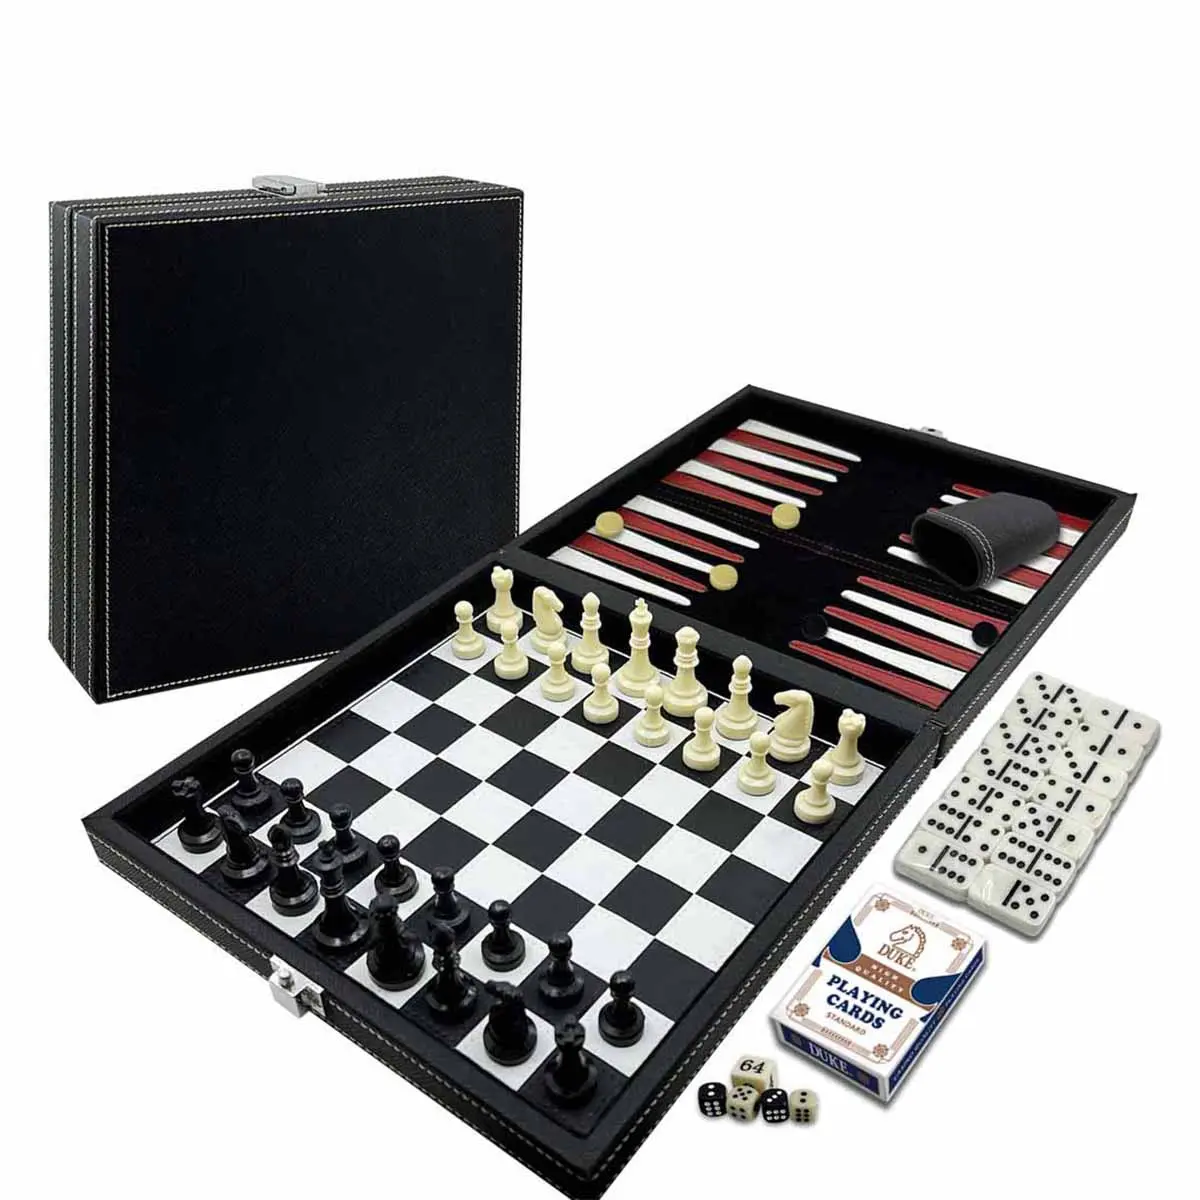 豪華黑色經典棋盤組合遊戲系列